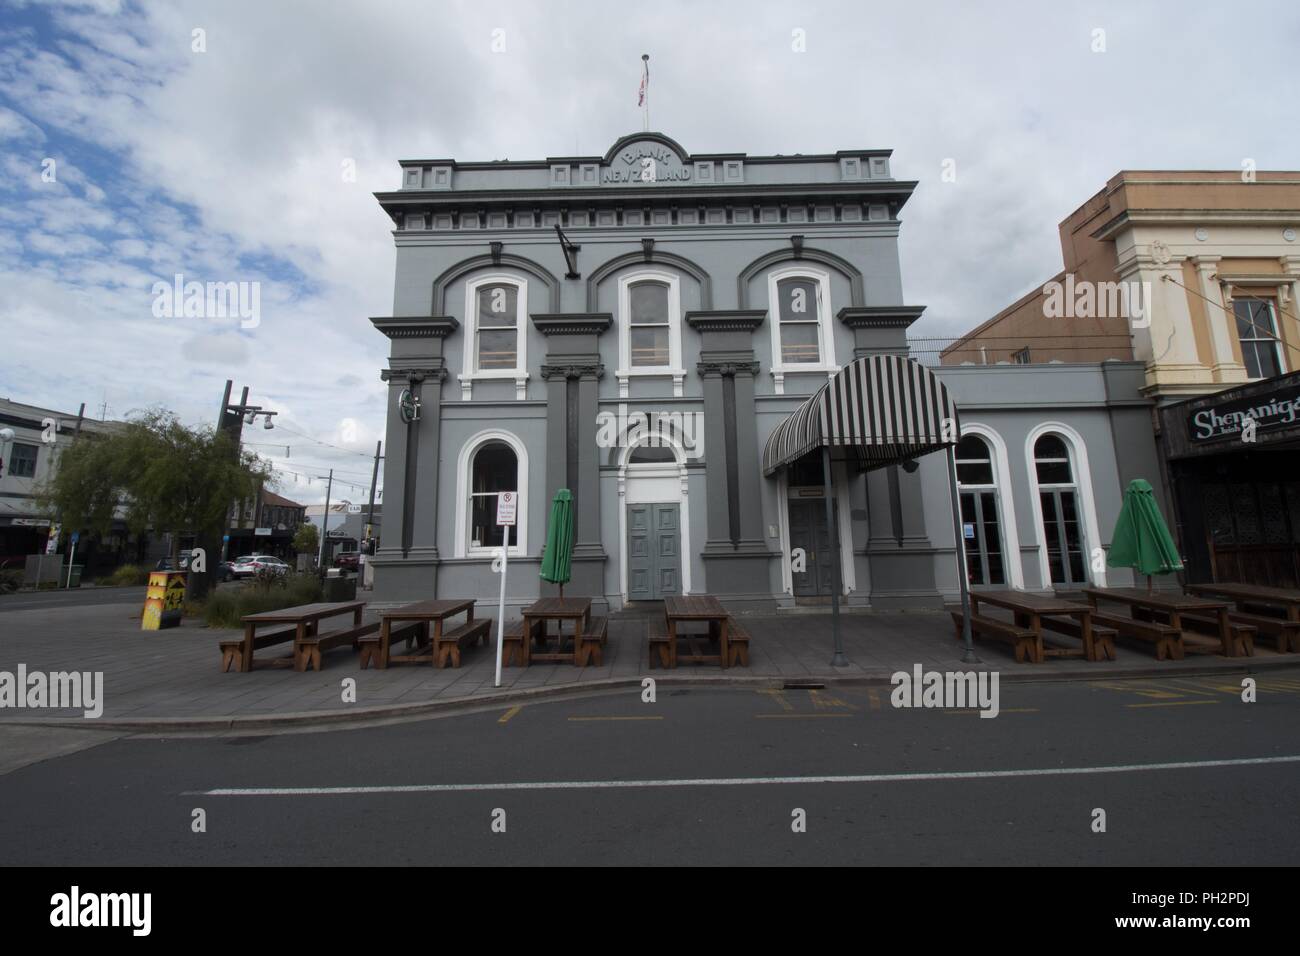 Banque historique de la Nouvelle-Zélande en s'appuyant sur l'image à Hamilton, Nouvelle-Zélande, Novembre, 2017. () Banque D'Images